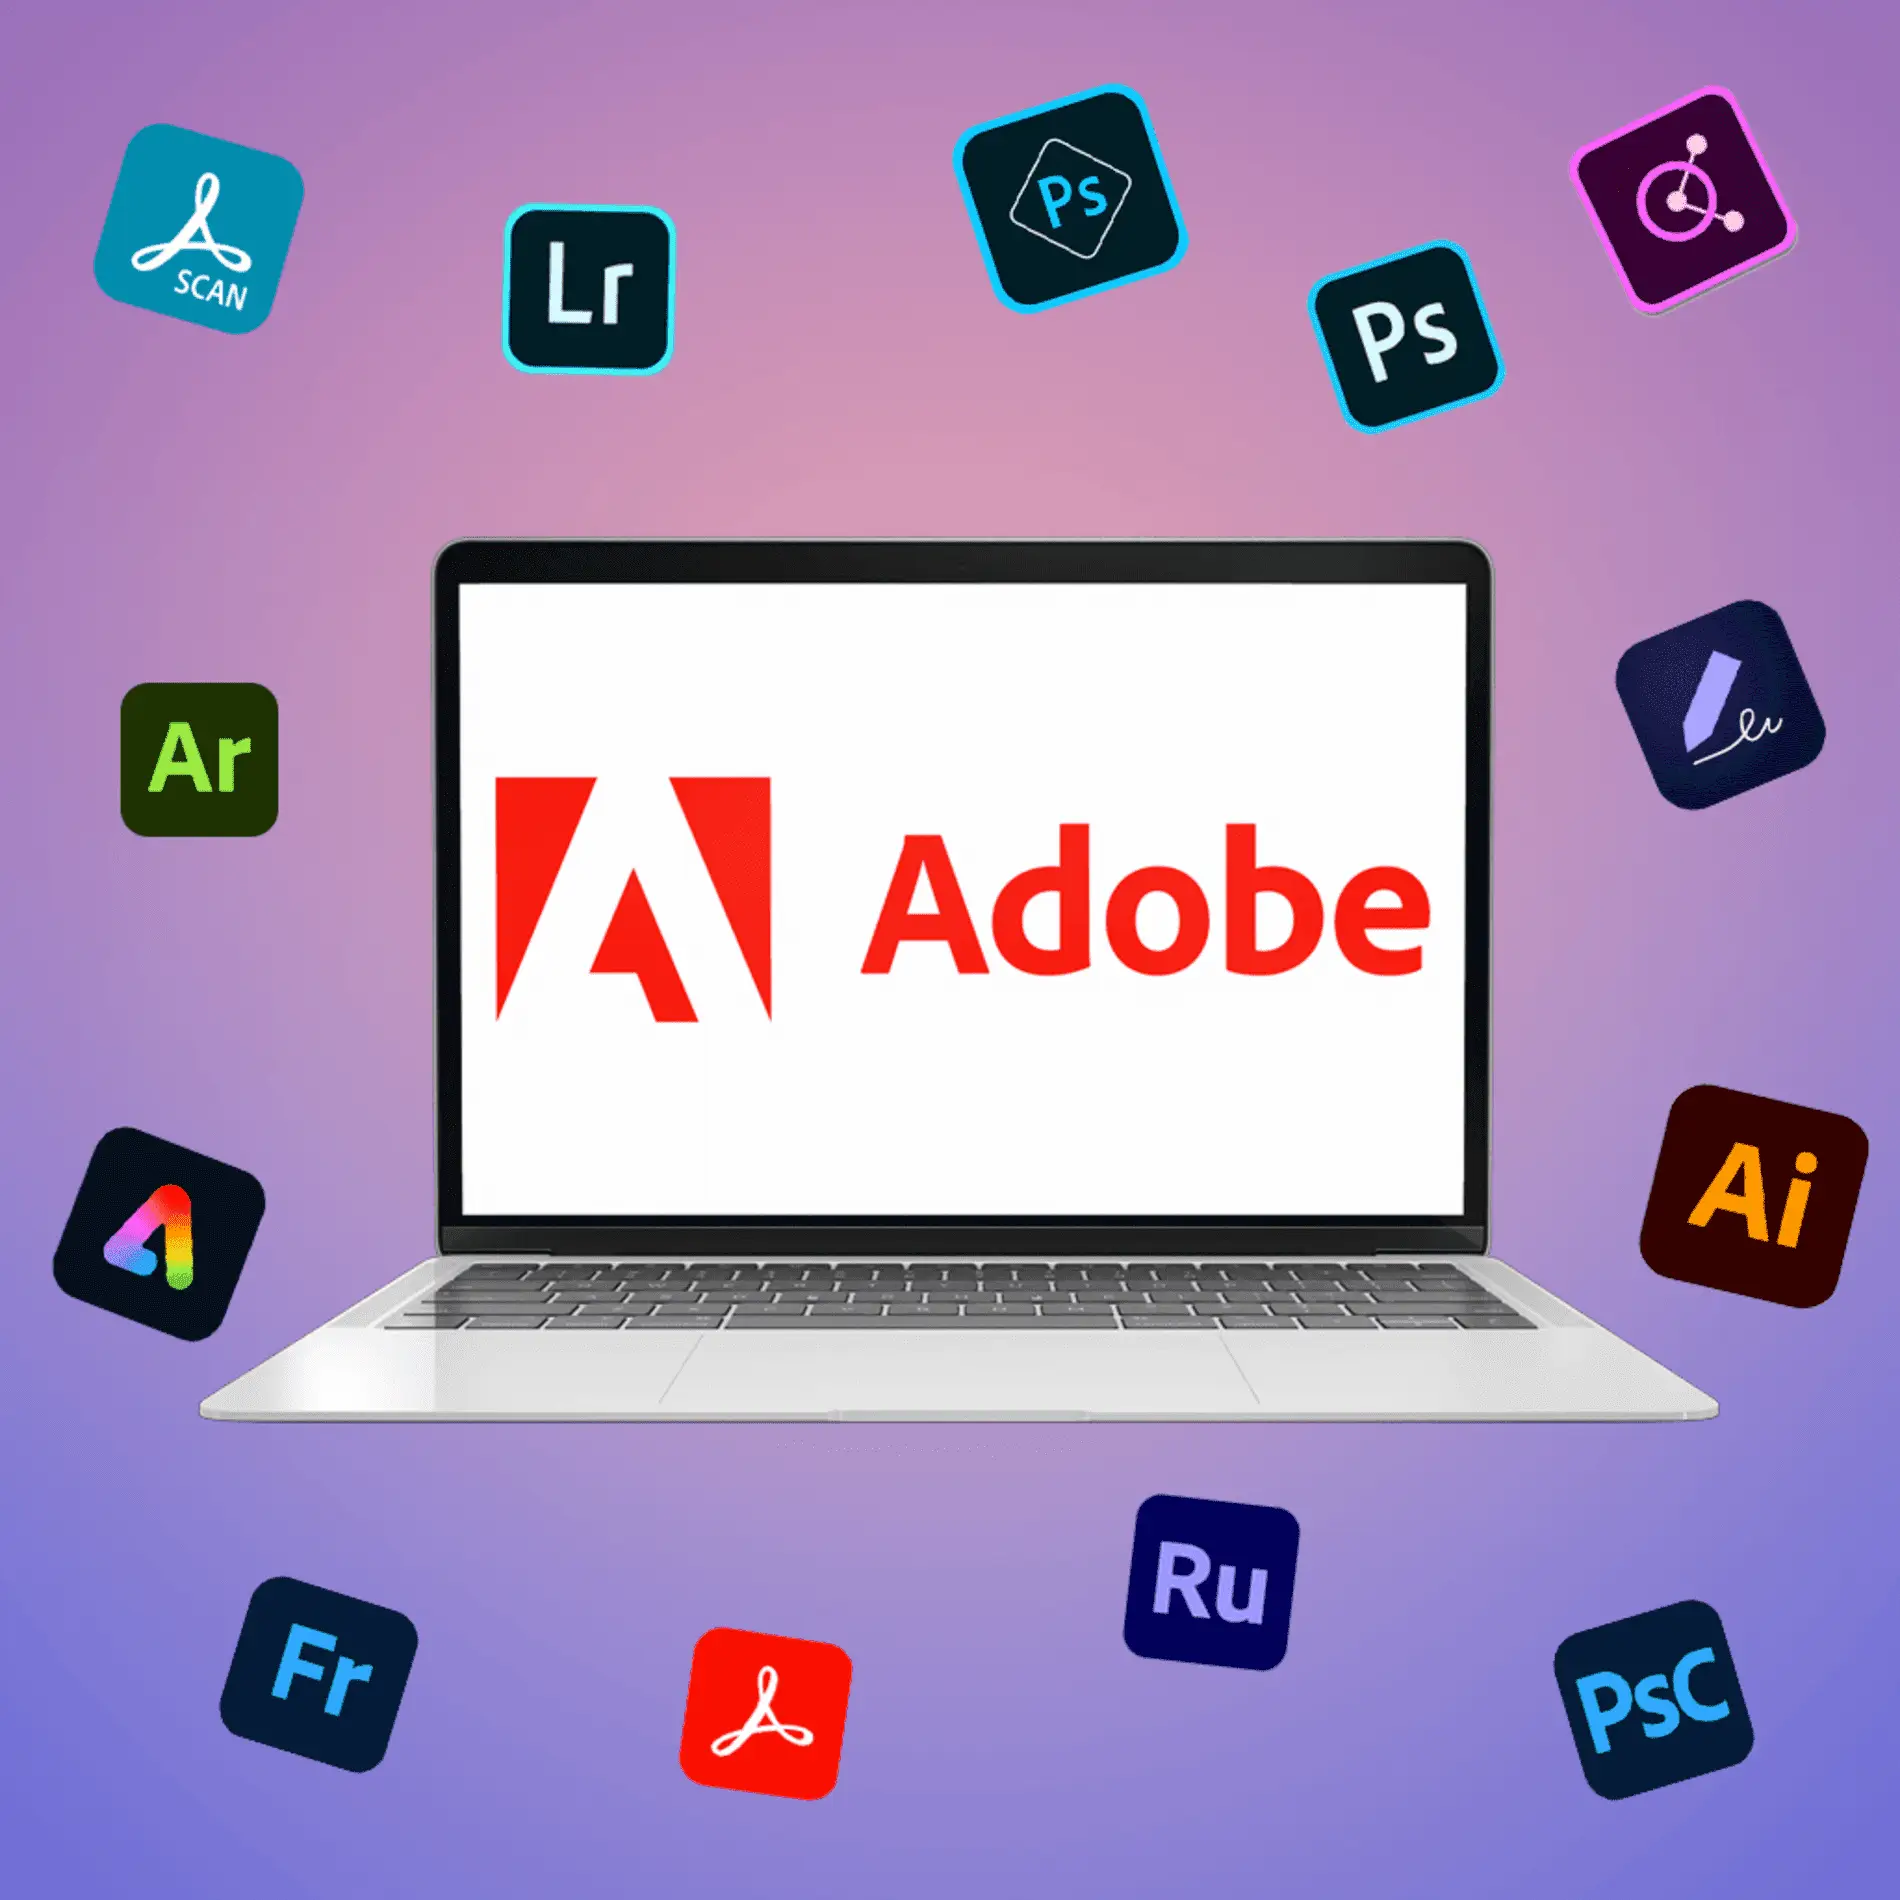 Adobe оновила користувальницьку угоду, відкривши можливість перегляду контенту користувачів